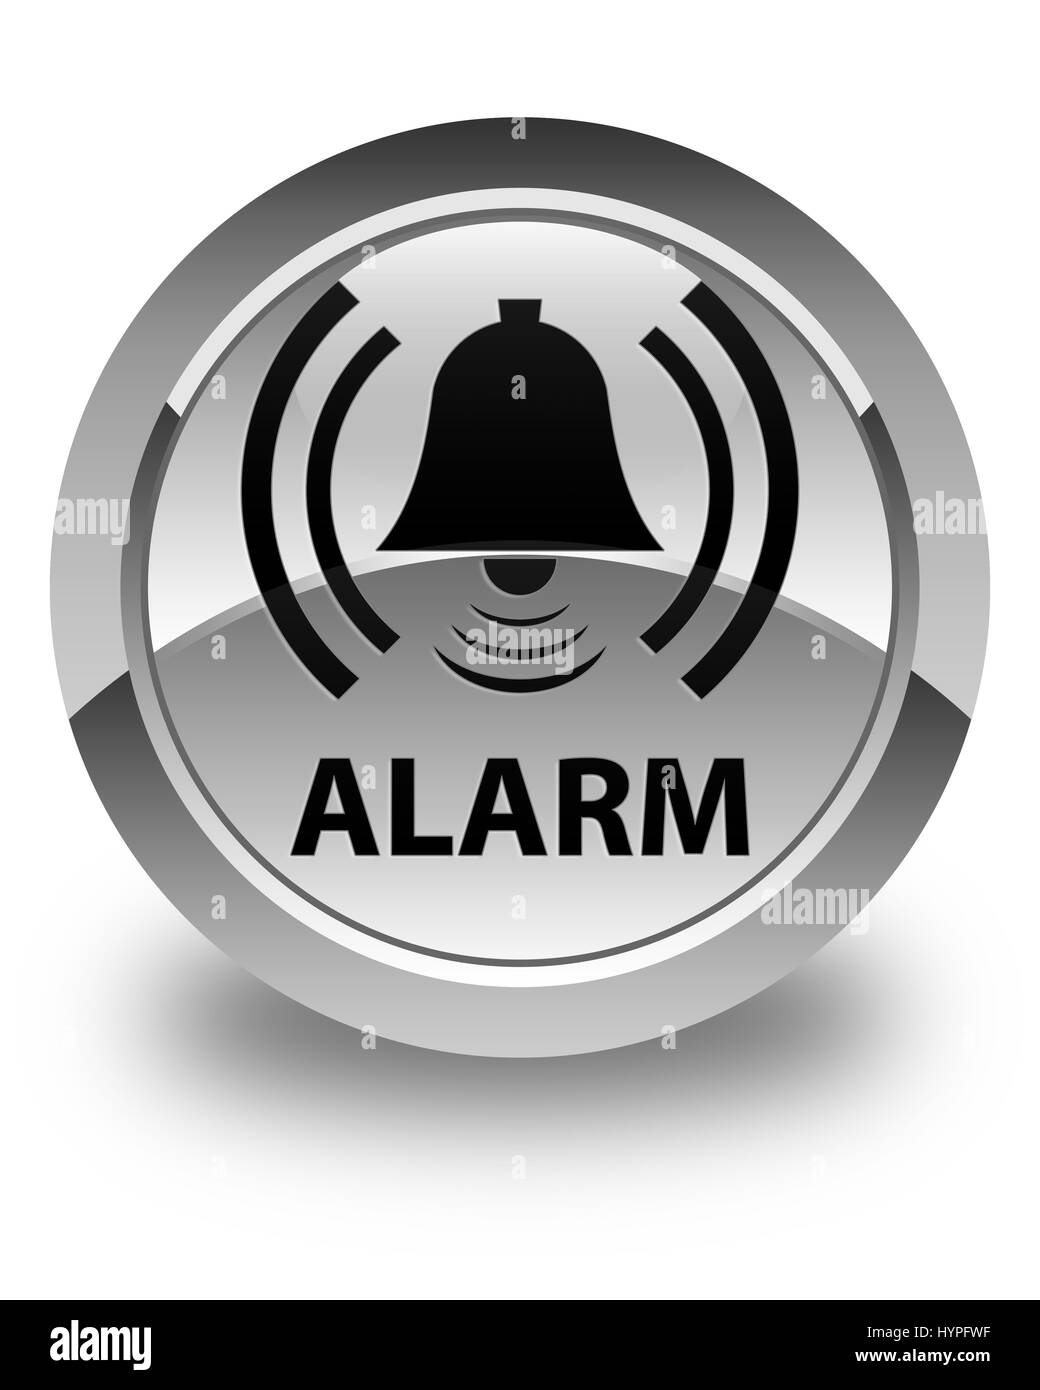 alarm bell logo